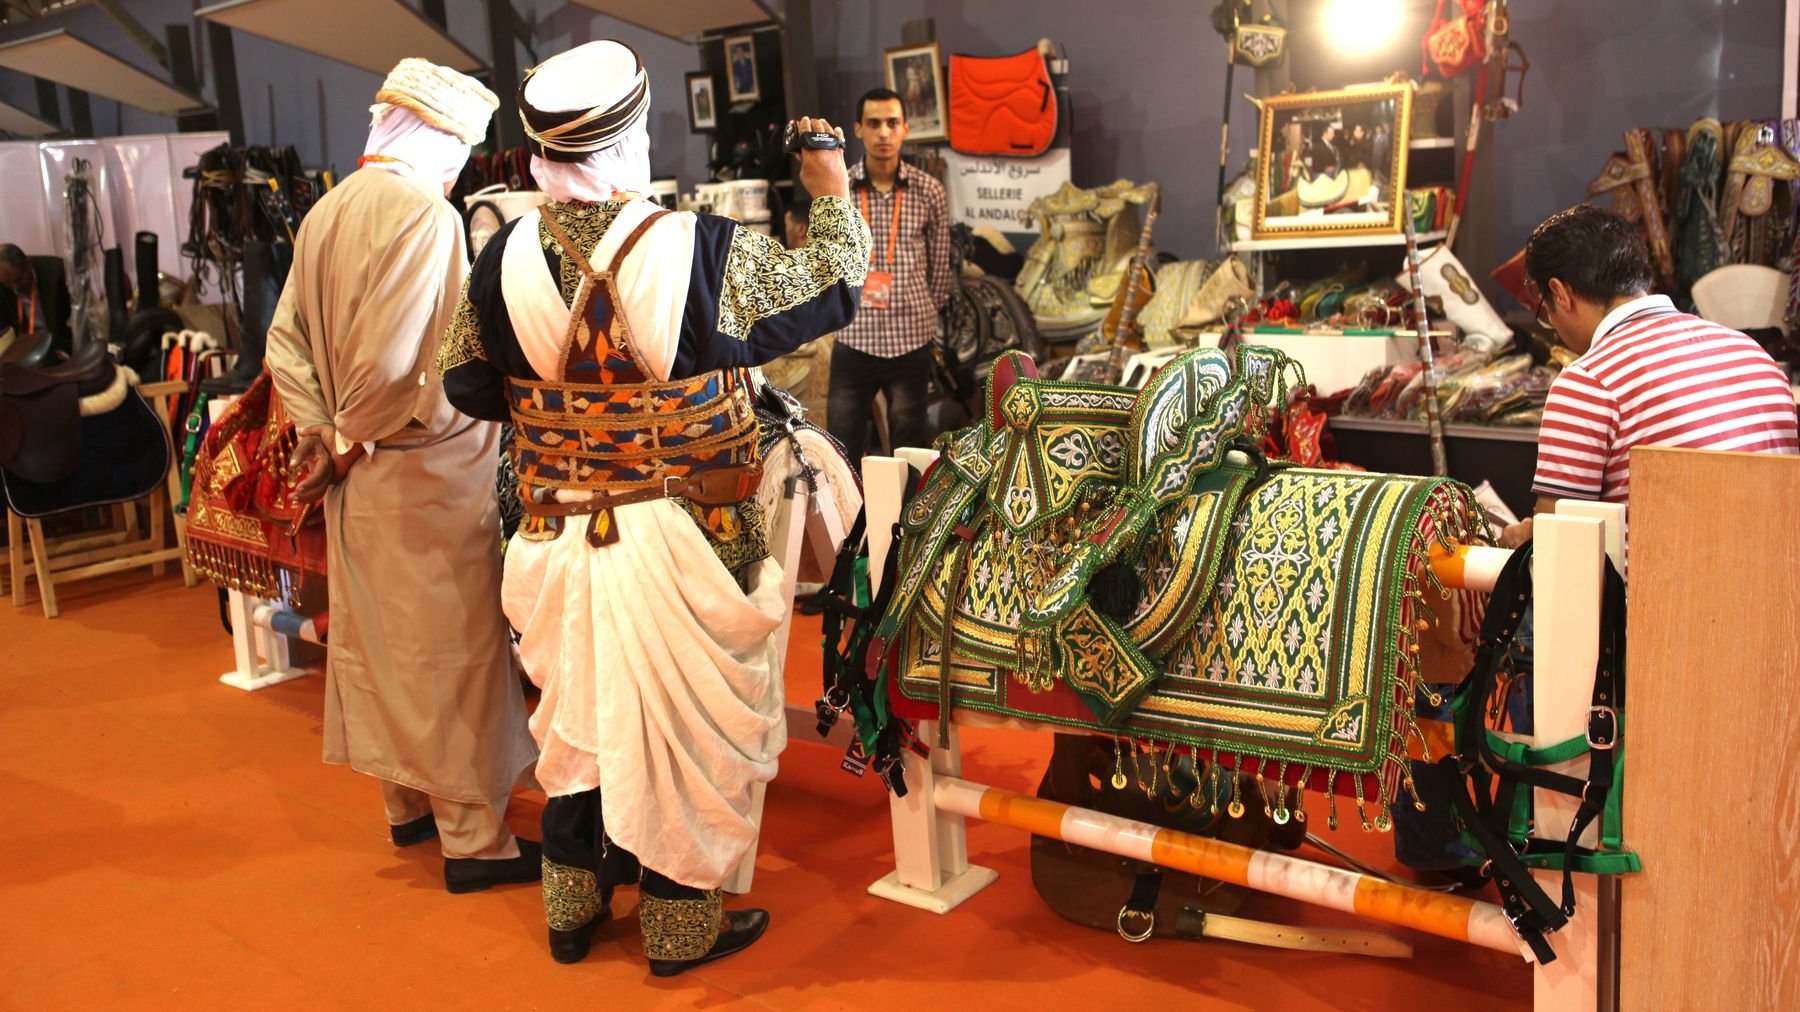 Féérie d'une tradition séculaire. Selles brodées, étriers de cuivre, costumes fascinants. L'univers du cheval, au Maroc, est riche de rituels et de belles traditions soigneusement préservées.  
